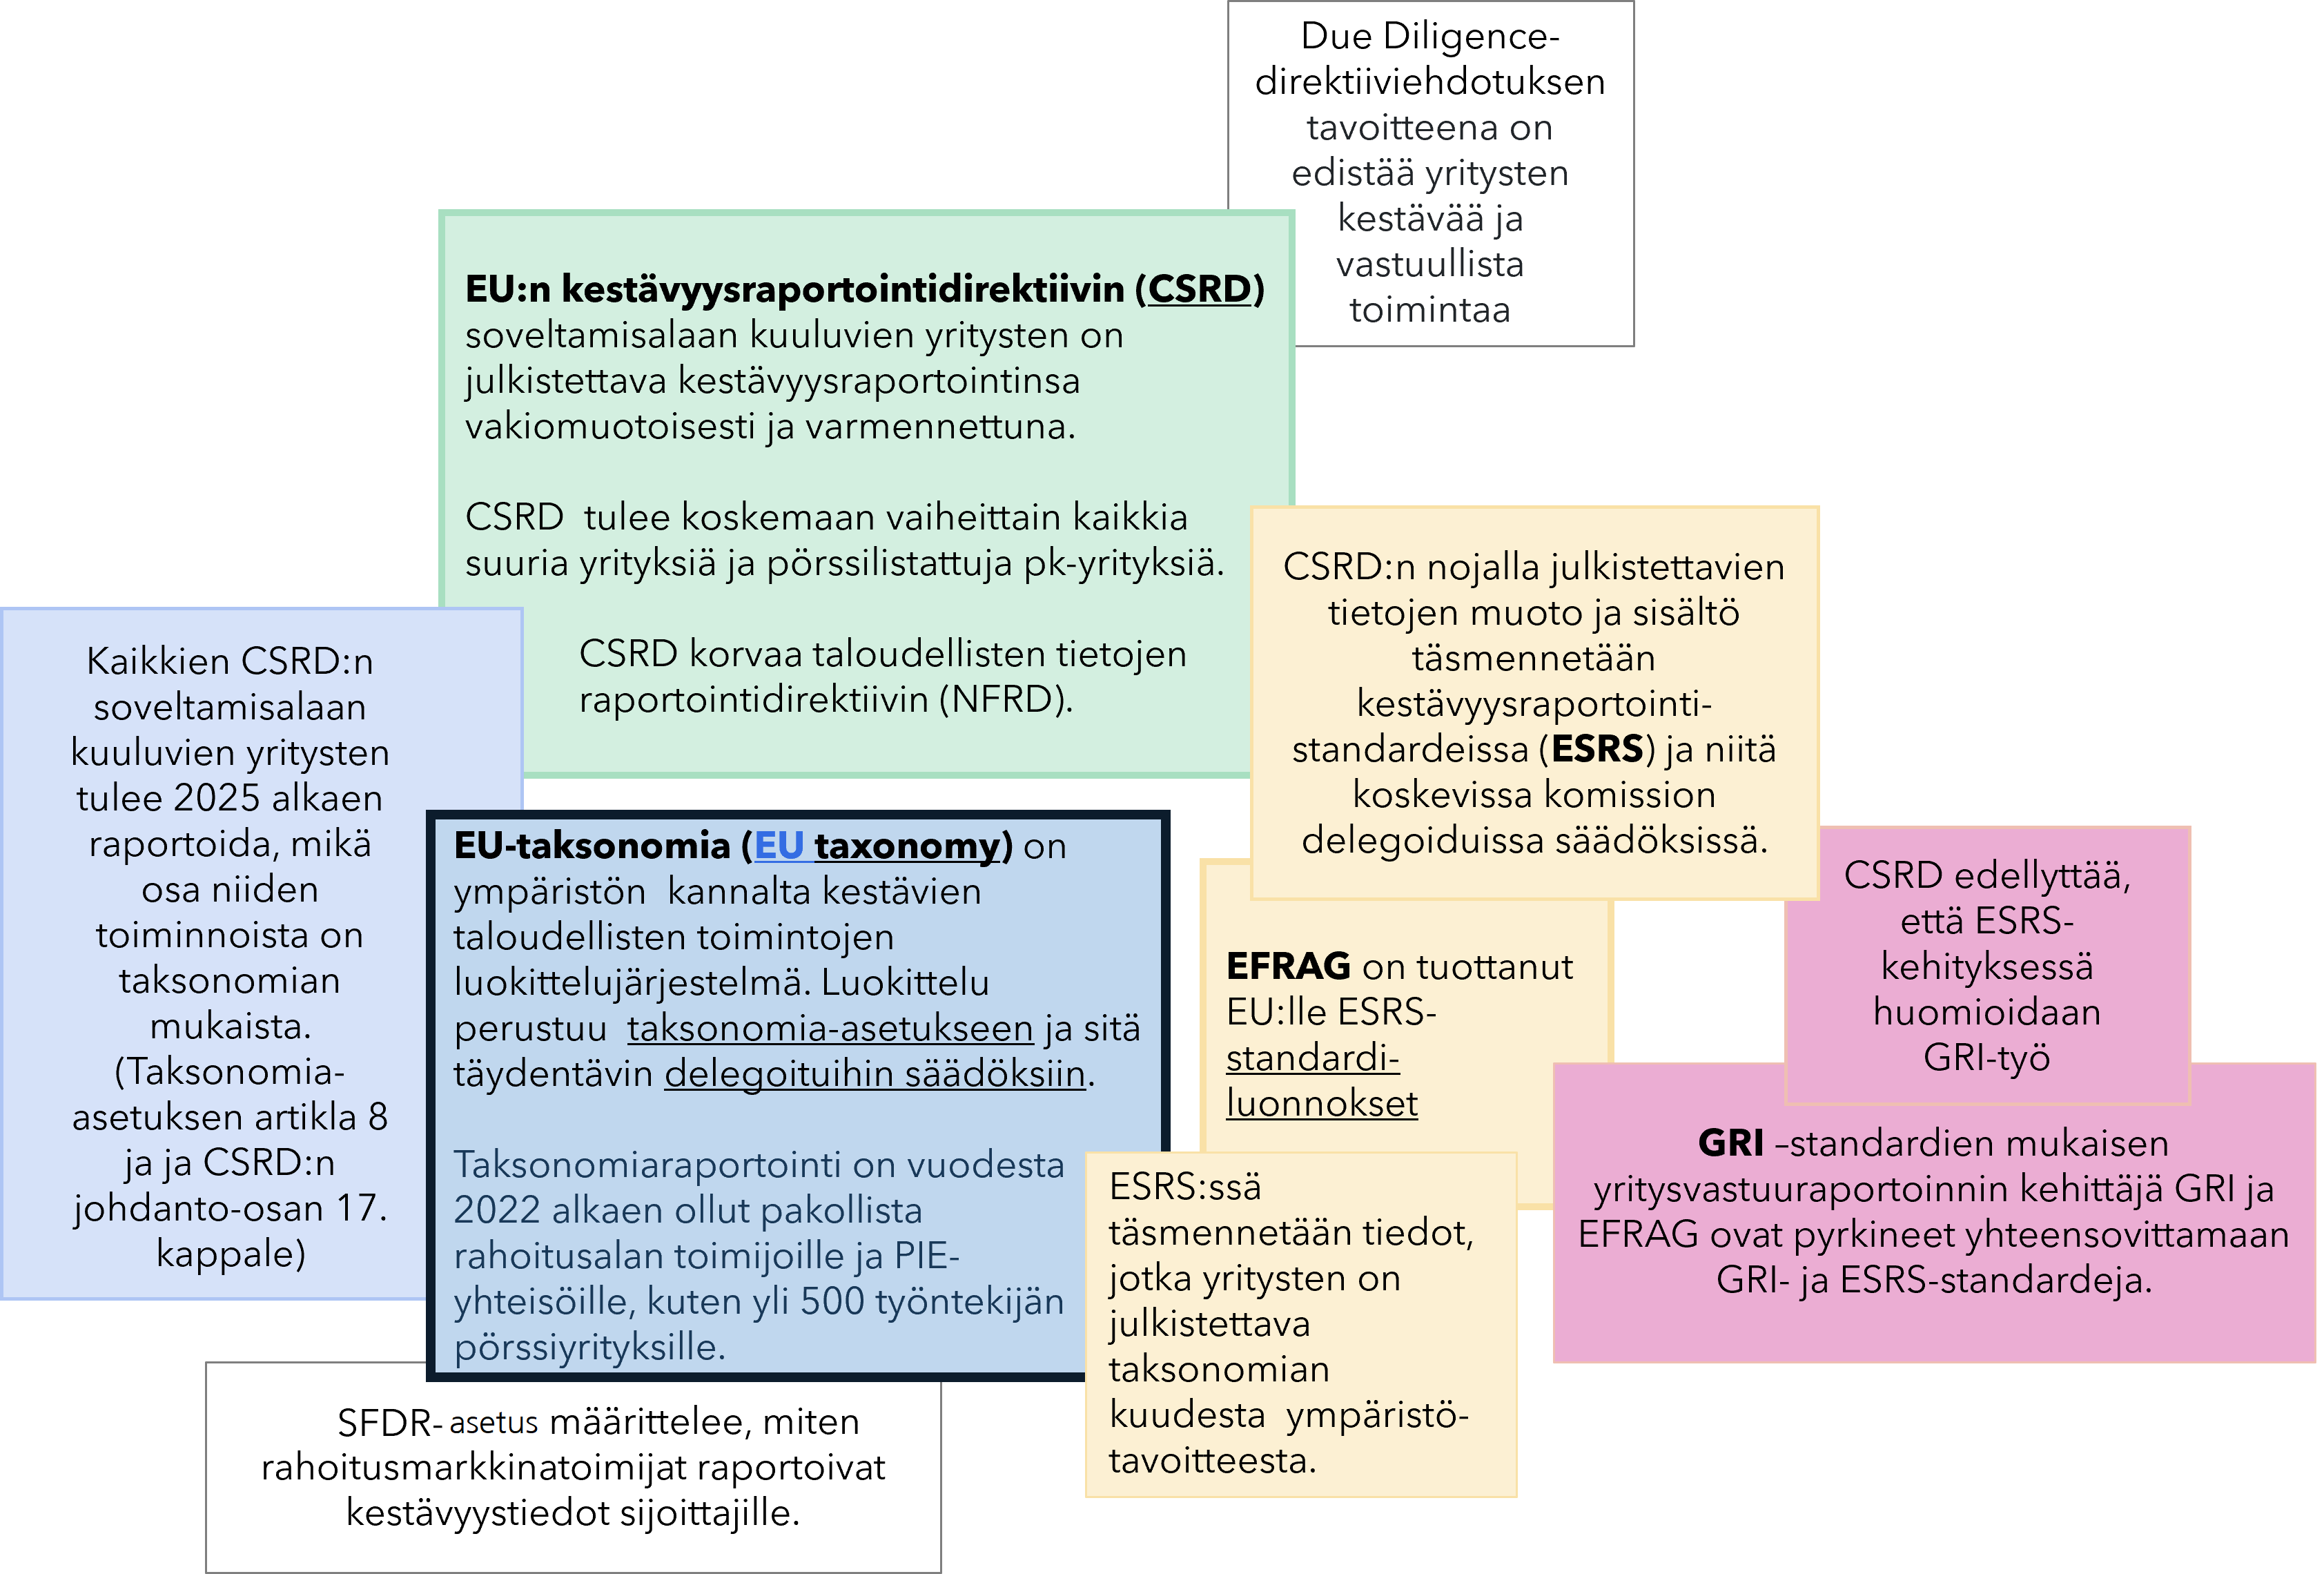 Taksonomia linkittyy osaksi yritysten kestävyysraportointia. Kuva osoittaa yhteydet EU-taksonomian, CSRD-direktiivin, ESRS-kestävyysraportointistandardien, GRI-standardien ja SFRD-asetuksen välillä.